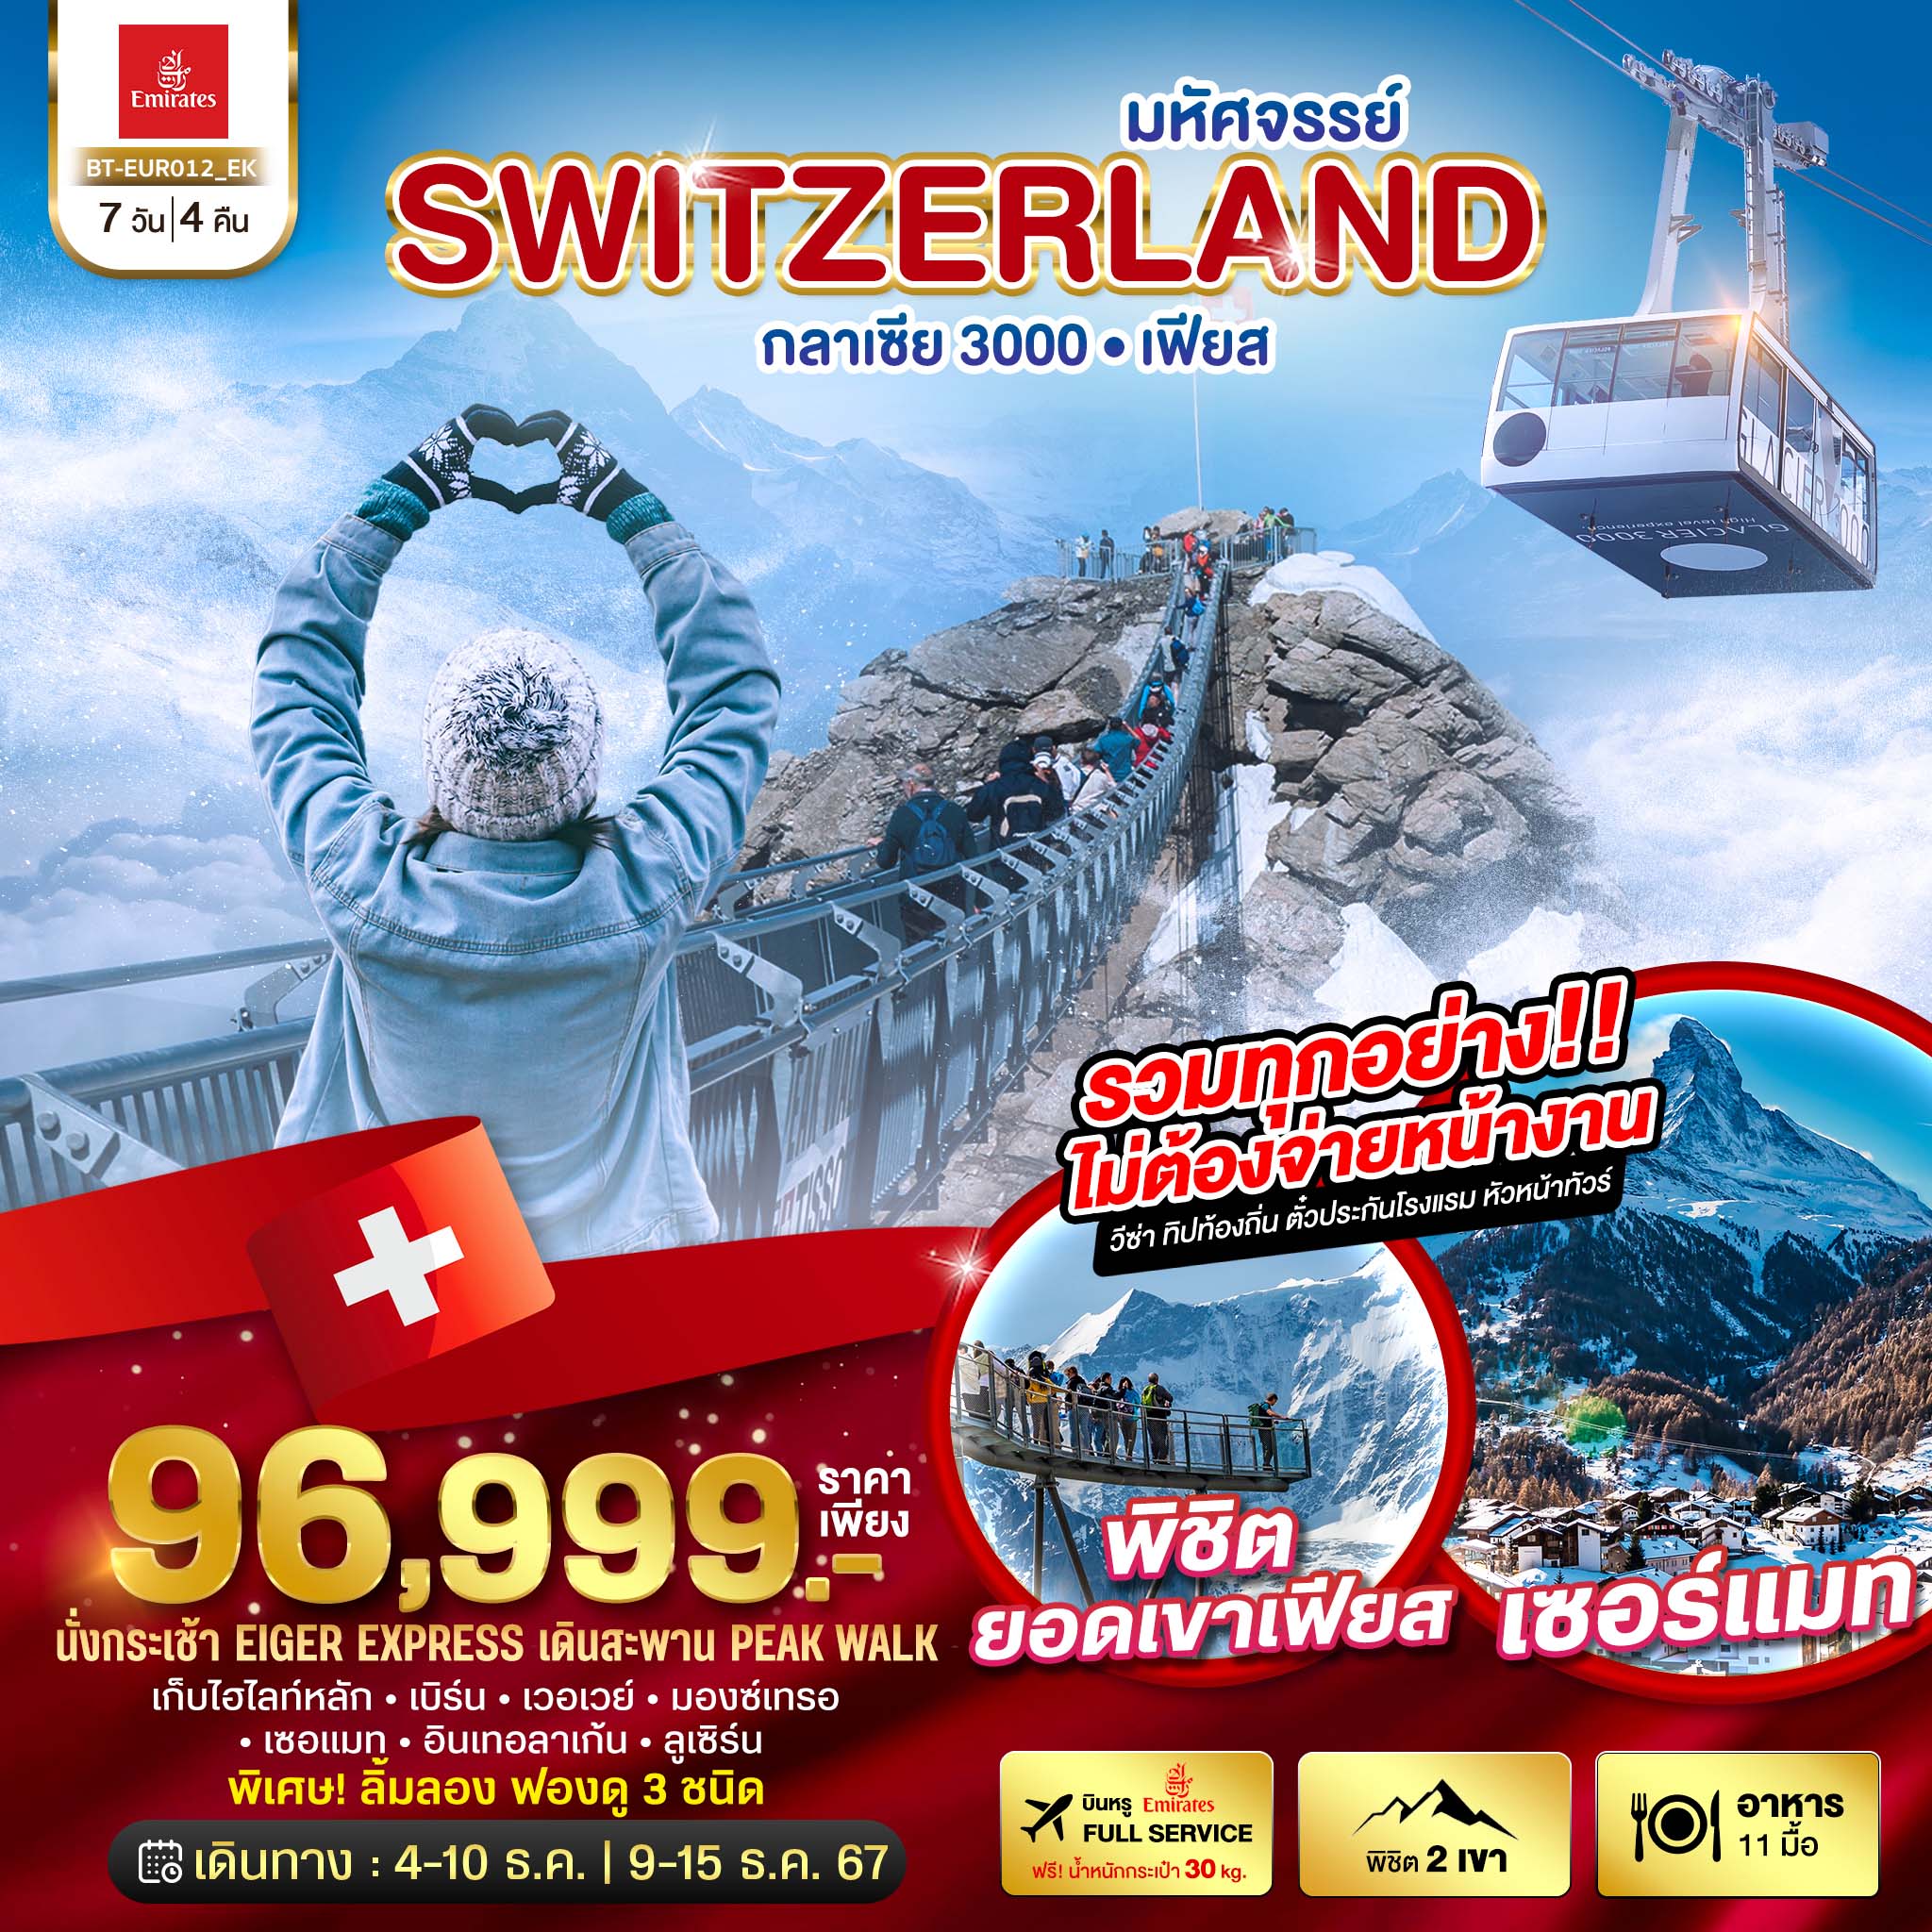 ทัวร์ยุโรป มหัศจรรย์ Semi Grand Swiss พิชิต 2 เขา เฟียส กลาเซีย 3000  7วัน 4คืน EK